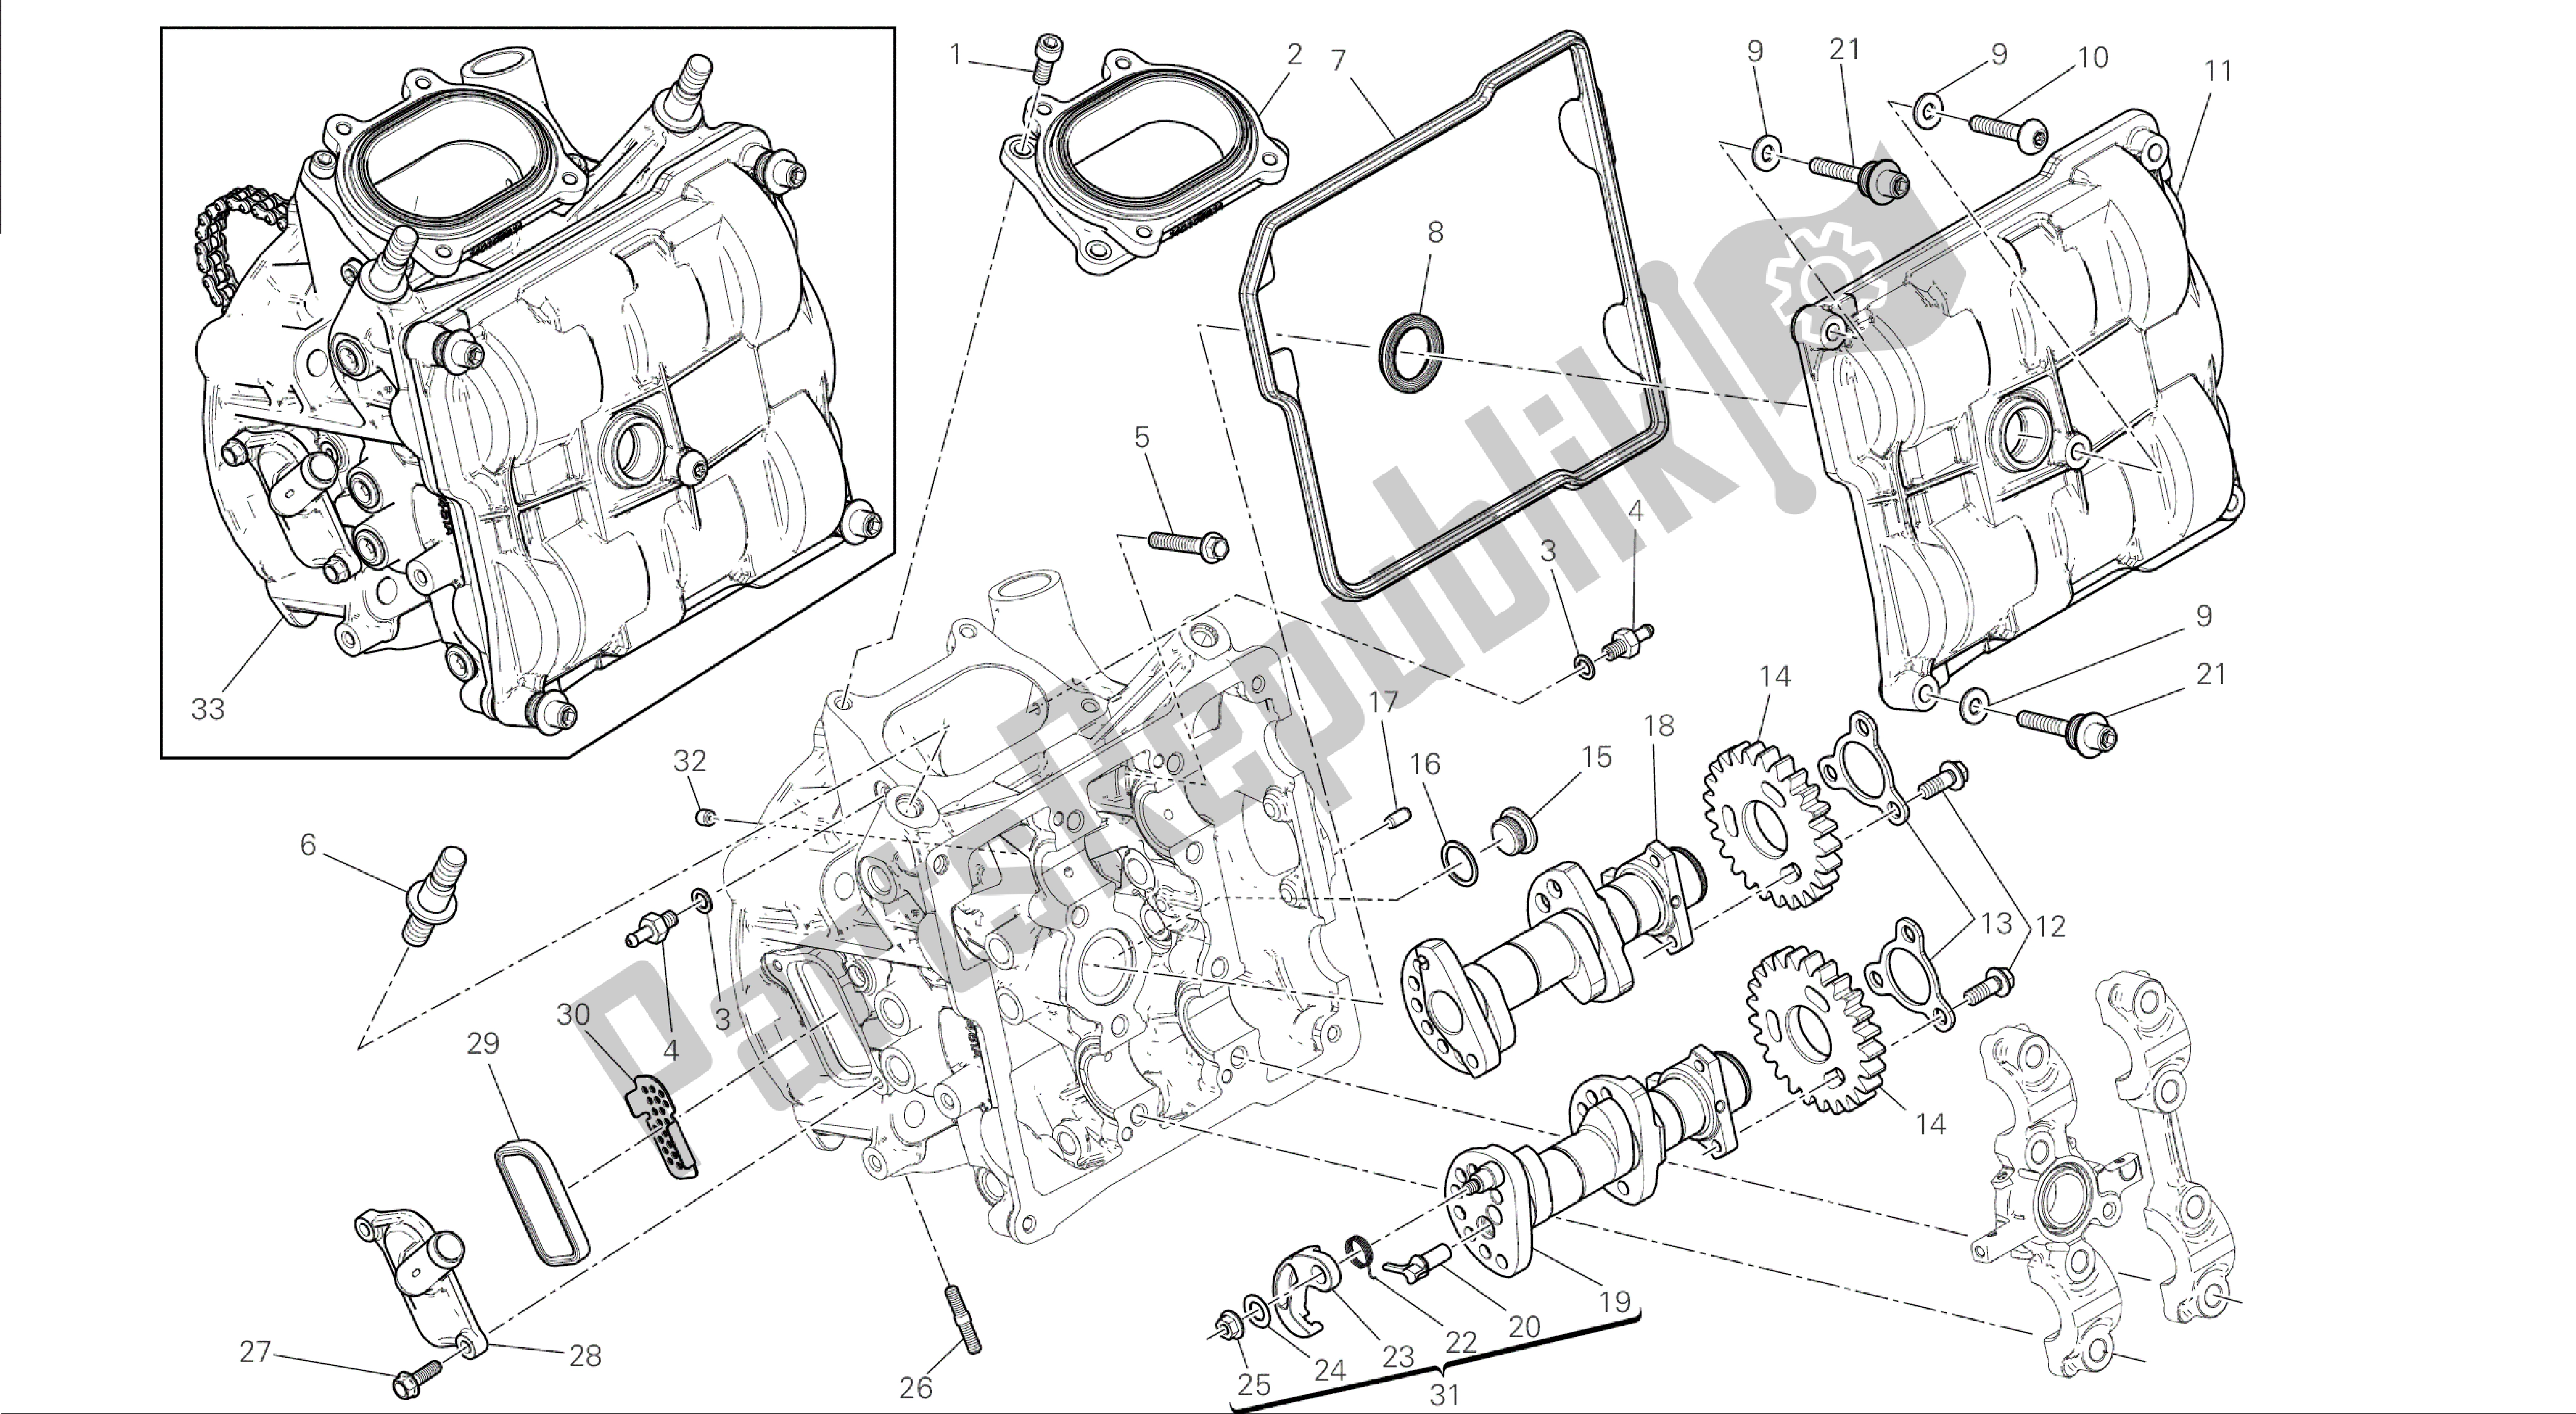 Alle onderdelen voor de Tekening 013 - Testa Orizzontale - Distribuzione [mod: 1199 Abs; Xst: Chn] Groep Engine van de Ducati Panigale ABS 1199 2014